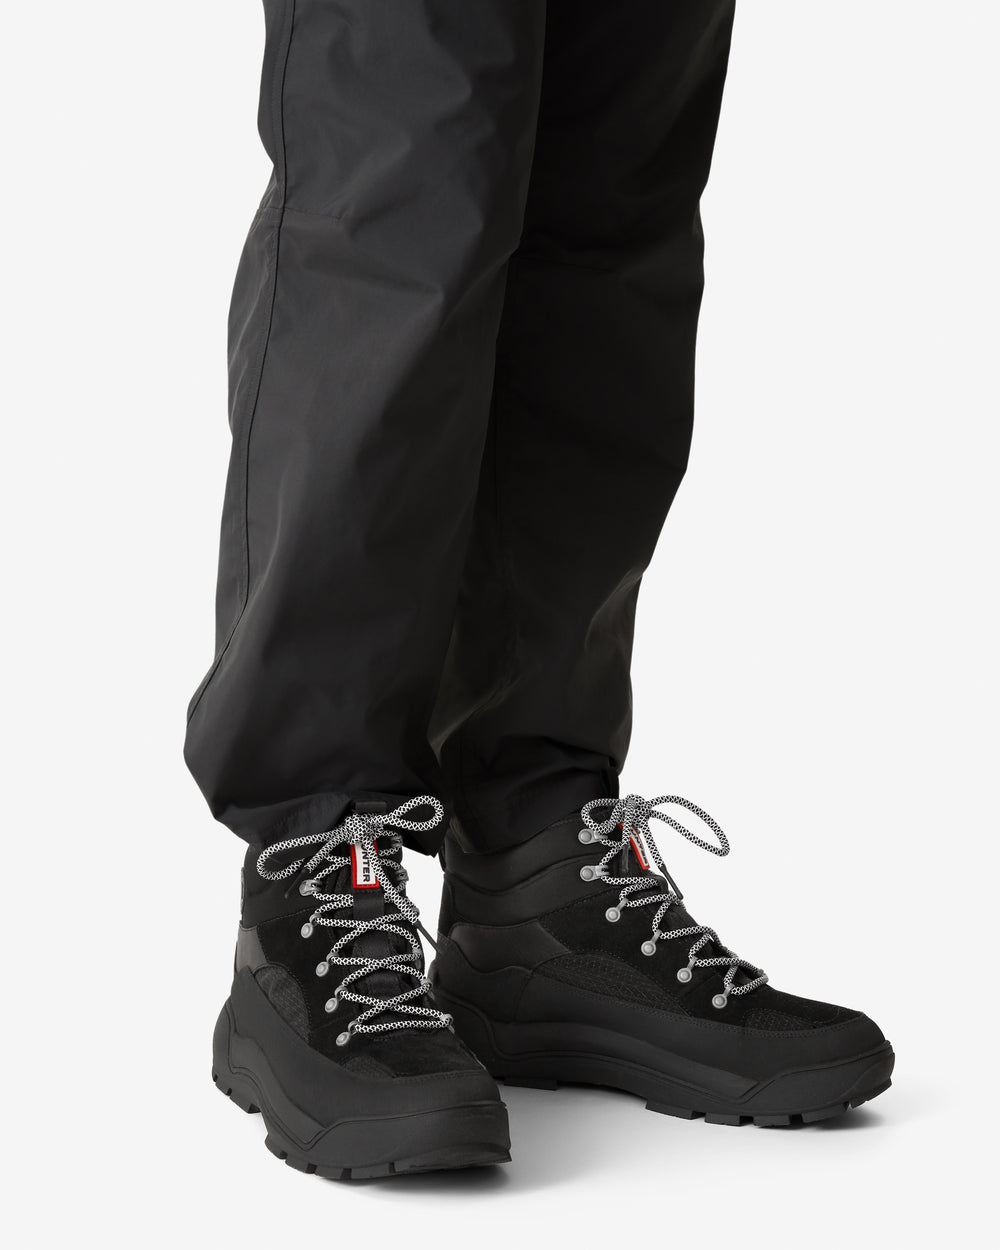 Men's Urban Explorer Lace-Up Leather Commando Boots